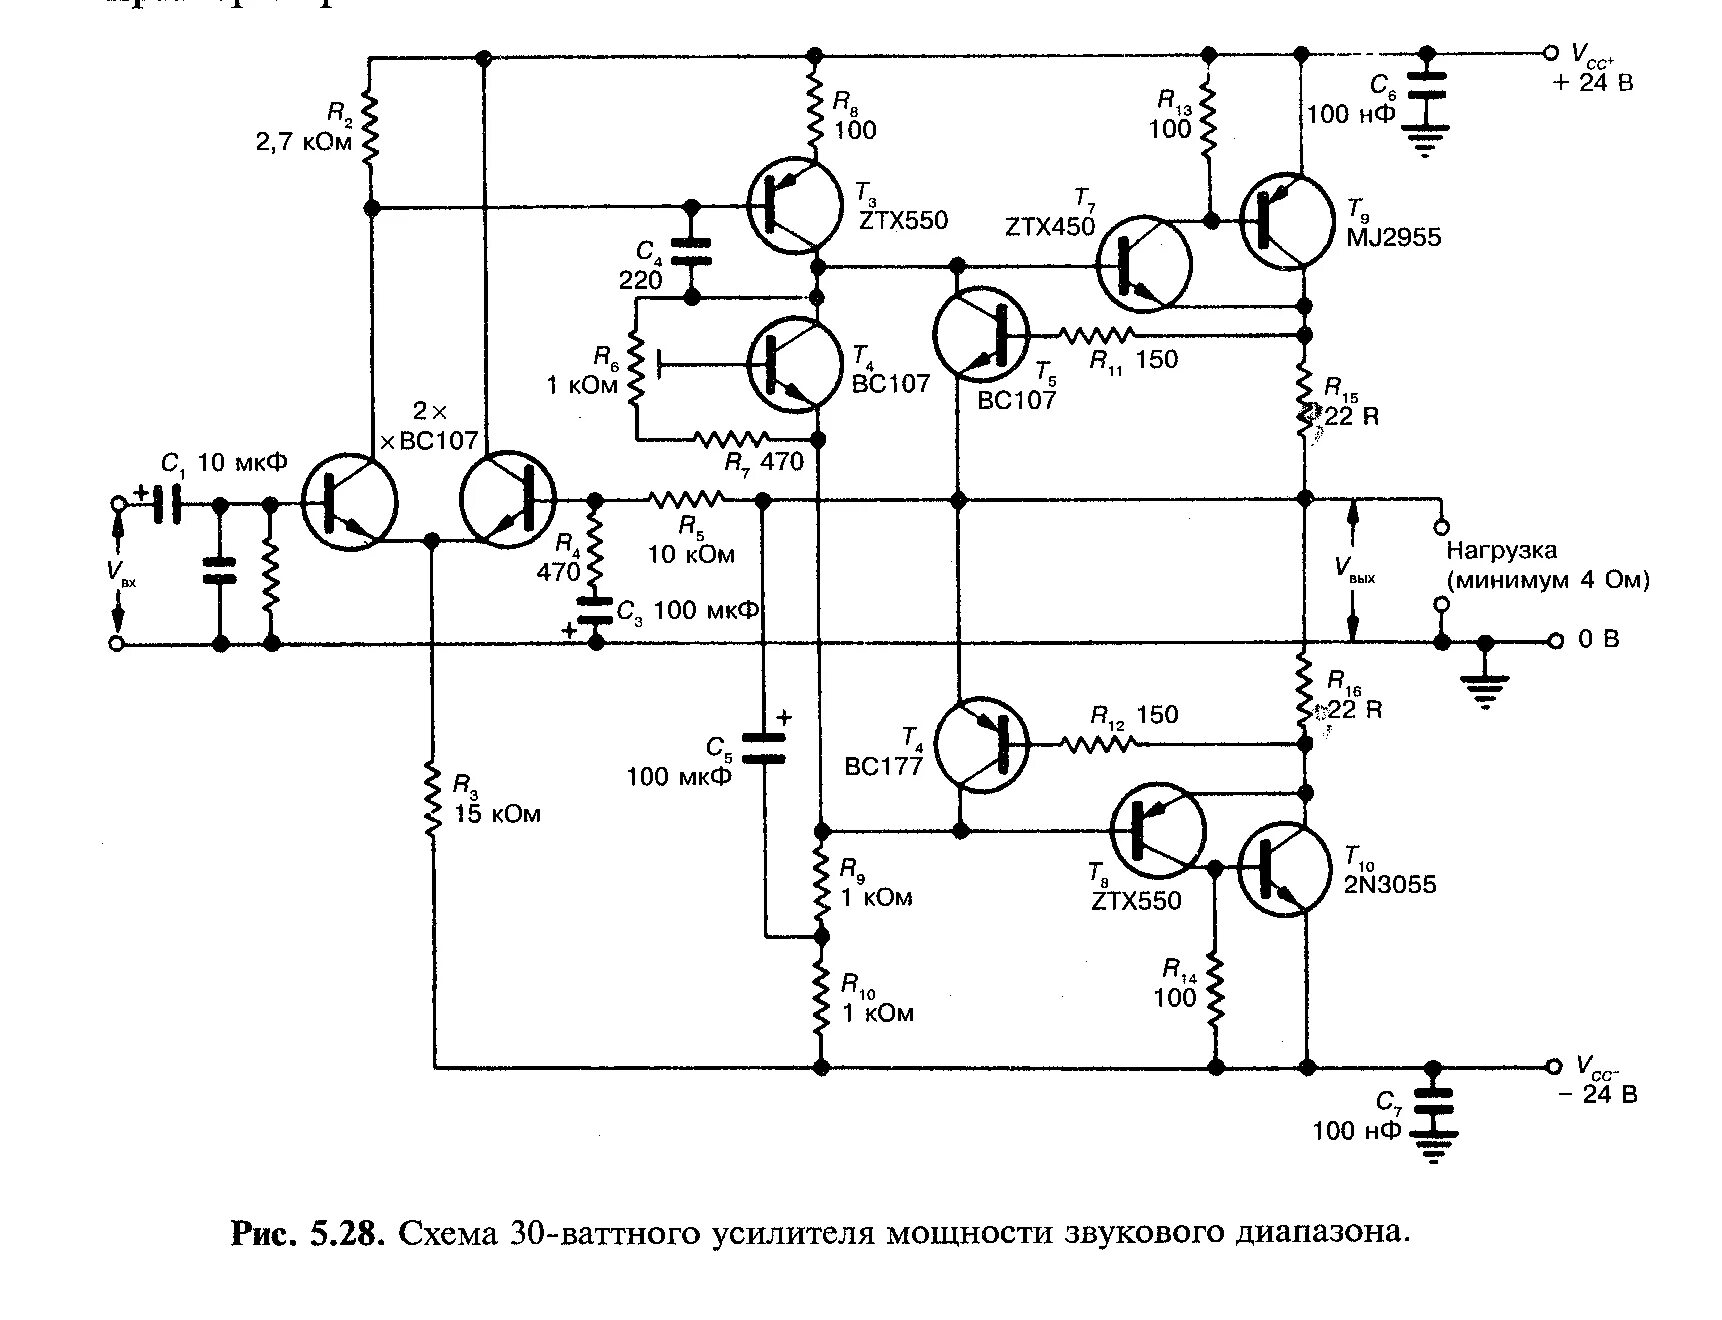 Транзисторные унч. Схема УМЗЧ на кт808. Схема усилителя мощности на транзисторах кт805. Схема усилителя на кт808а транзисторах. Схема усилителя на транзисторах кт802а.